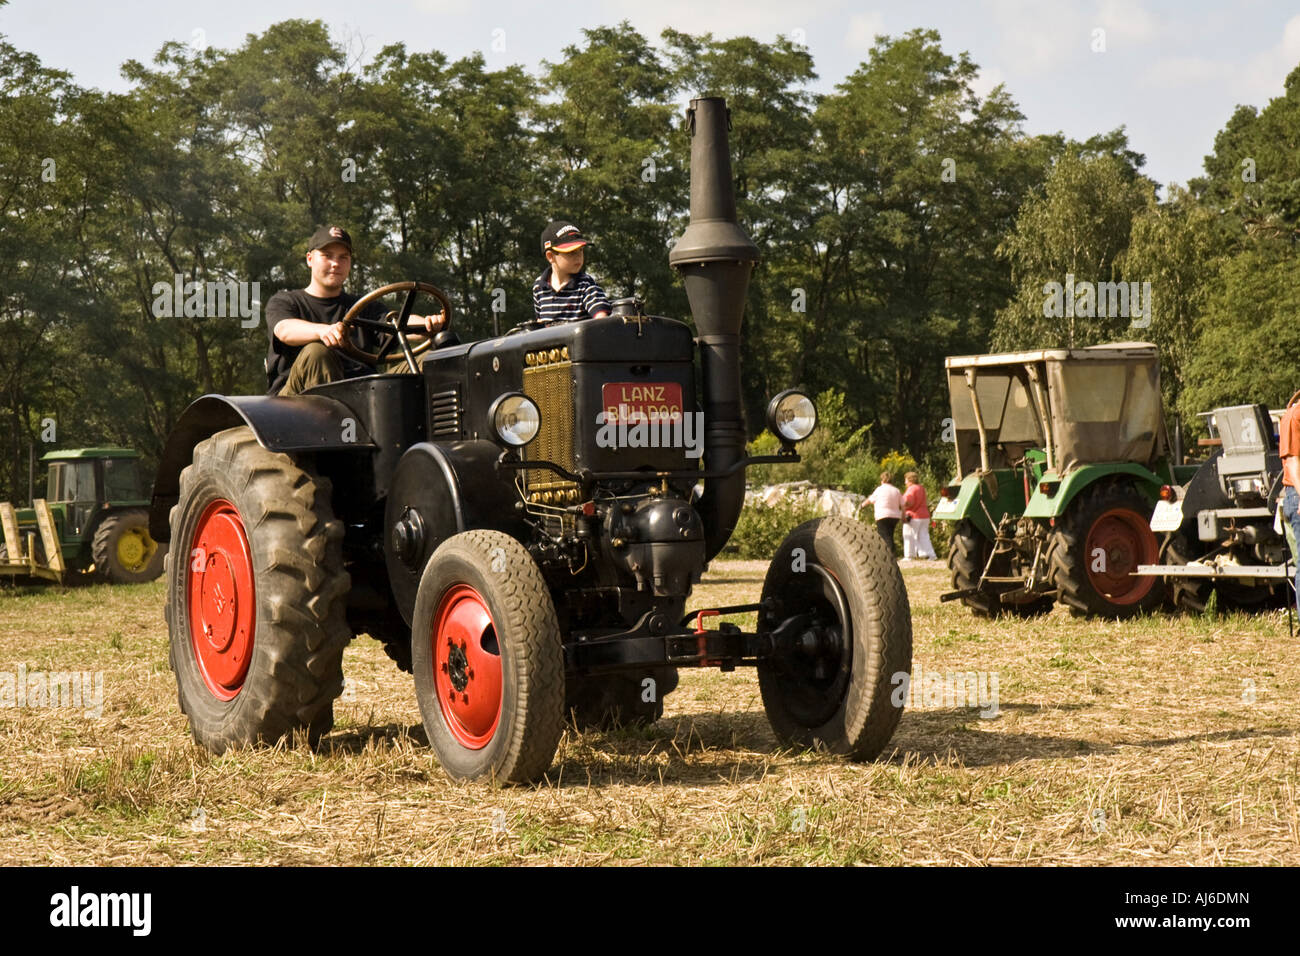 traktor, Germany, Bavaria Stock Photo